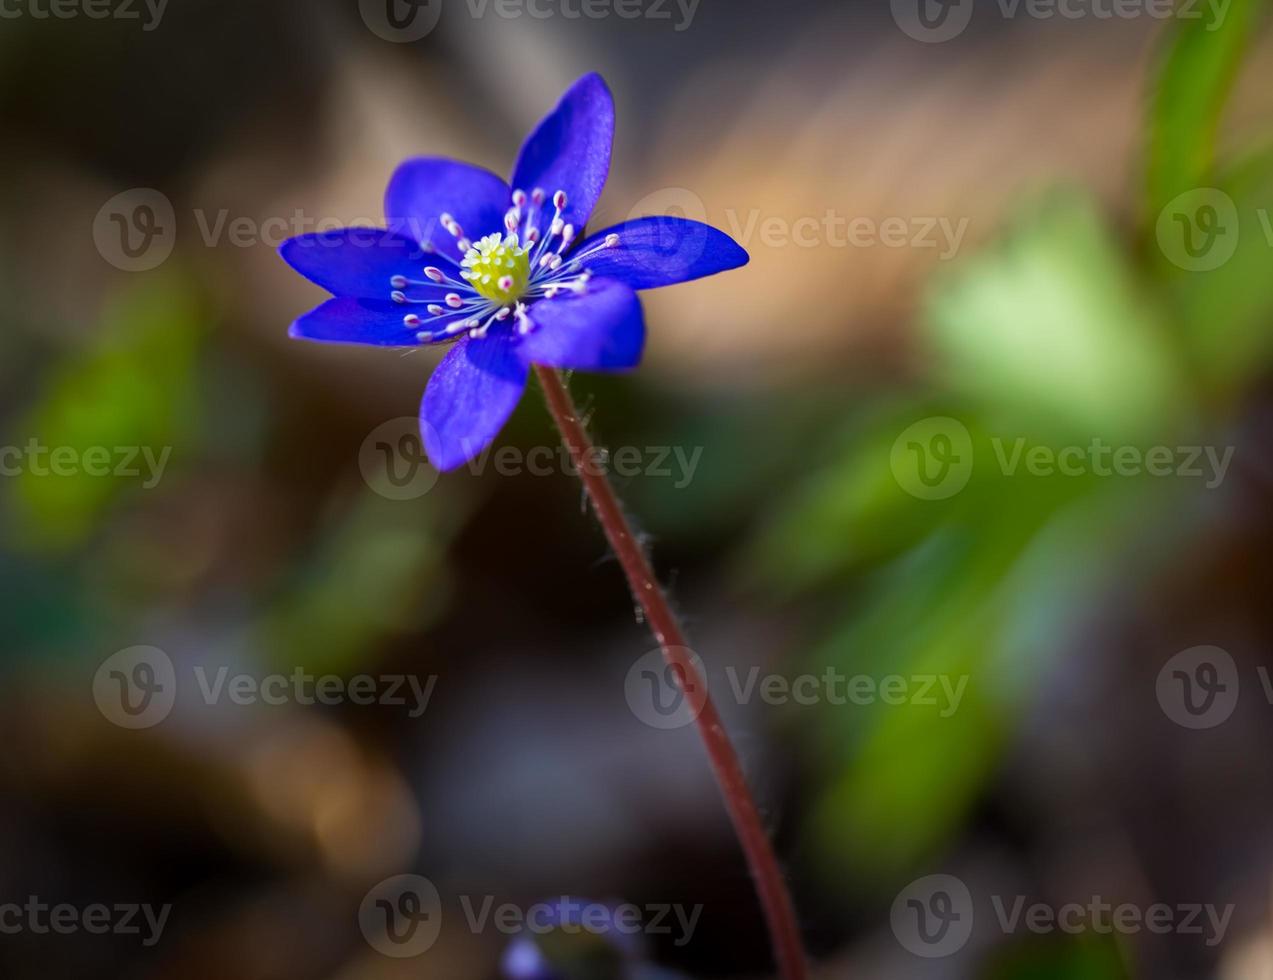 flor blue sprigtime liverworts (hepatica nobilis) foto